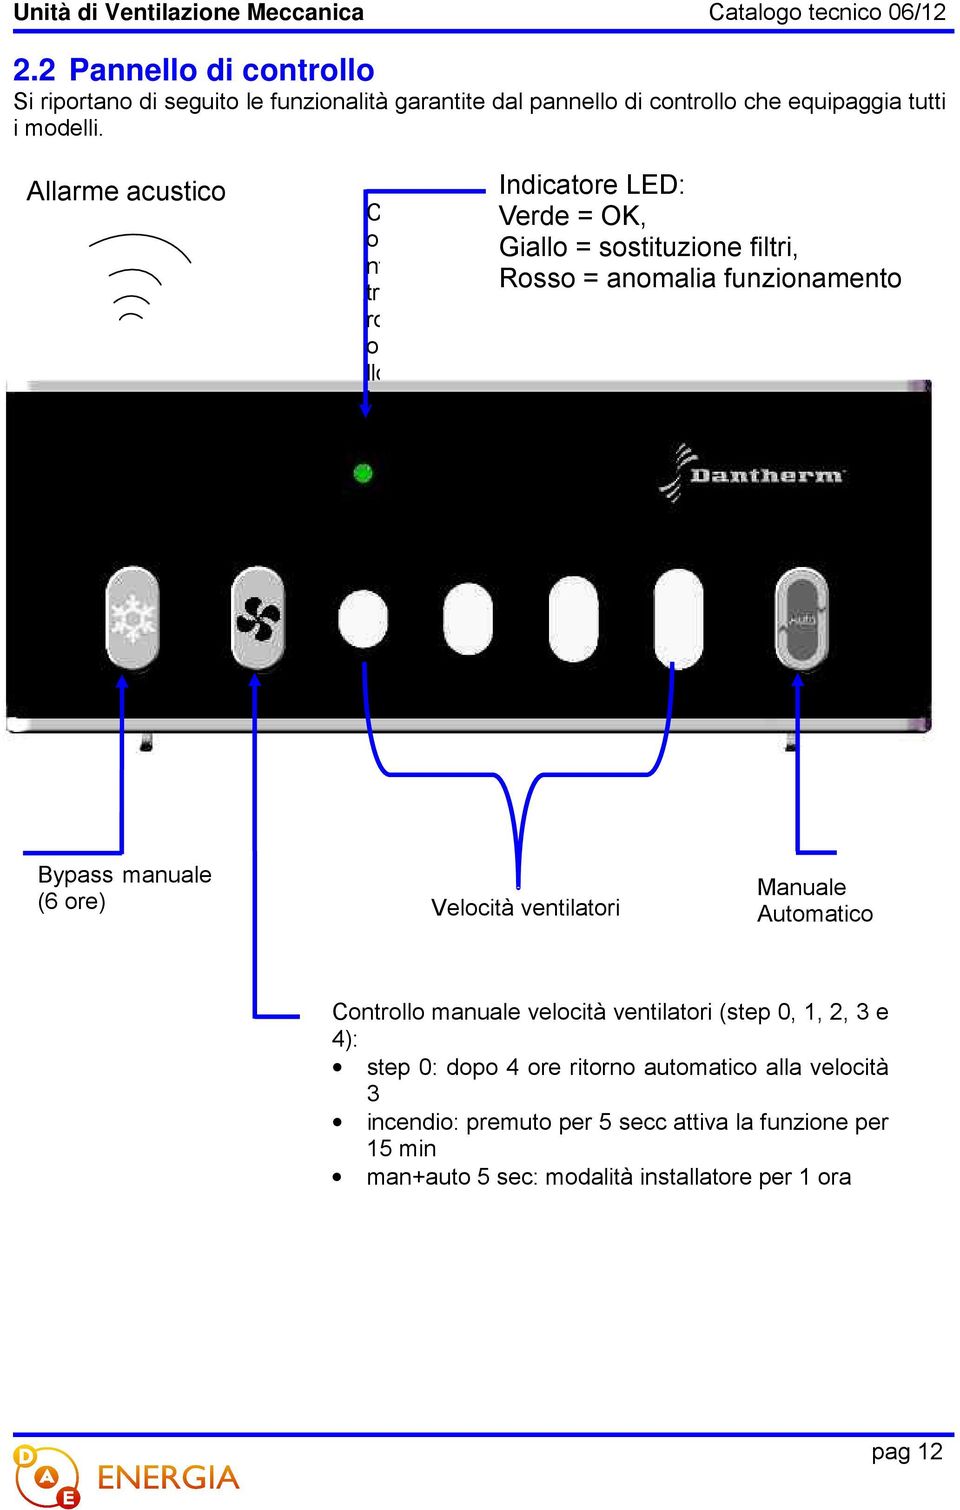 manuale velocità ventilatori (step 0, 1, 2, 3 e Rosso = anomalia funzionamento trollo manuale velocità ventilatori (step 0, 1, 2, 3 e 4): rollo manuale velocità ventilatori (step 0, 1, 2, 3 e 4):